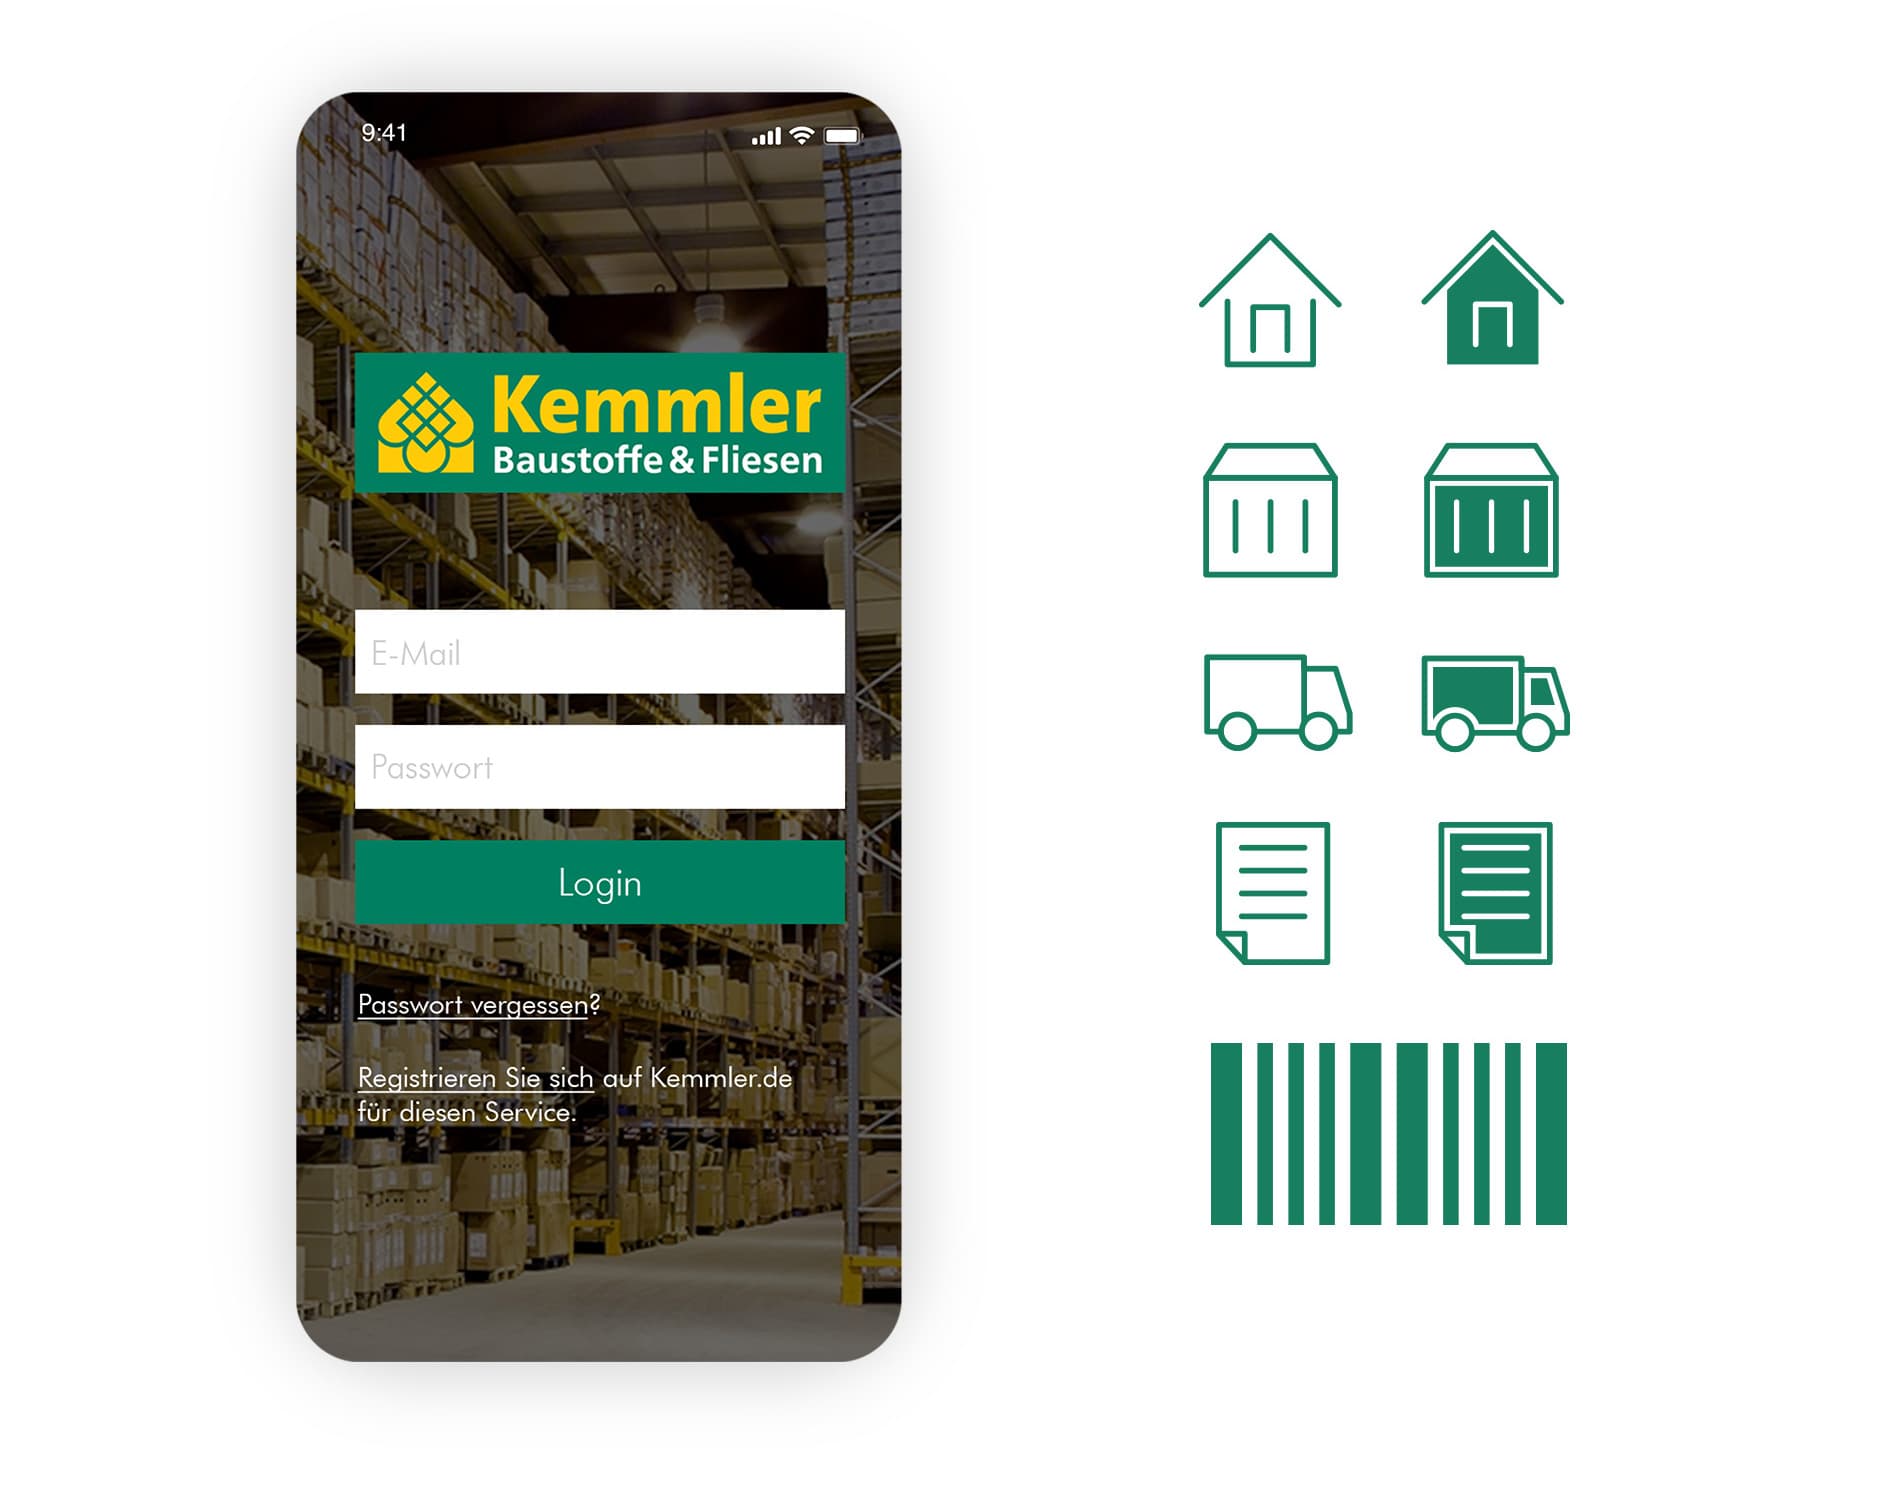 Abbildung der Anmeldeseite der Kemmler-App mit Iconset